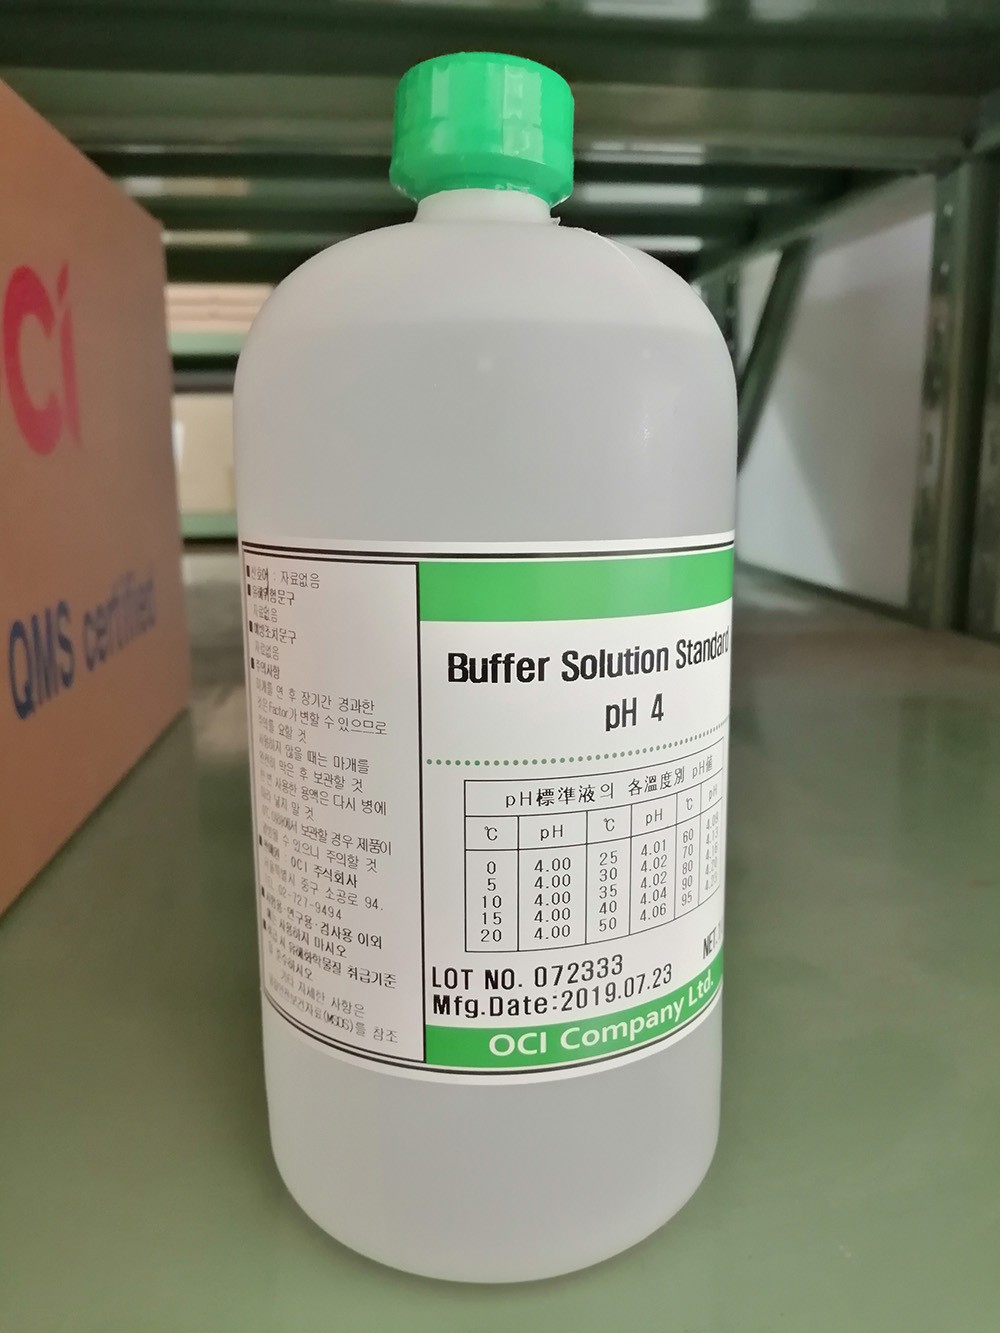 Buffer Solution Standard pH4 (1 litter), YoungJin